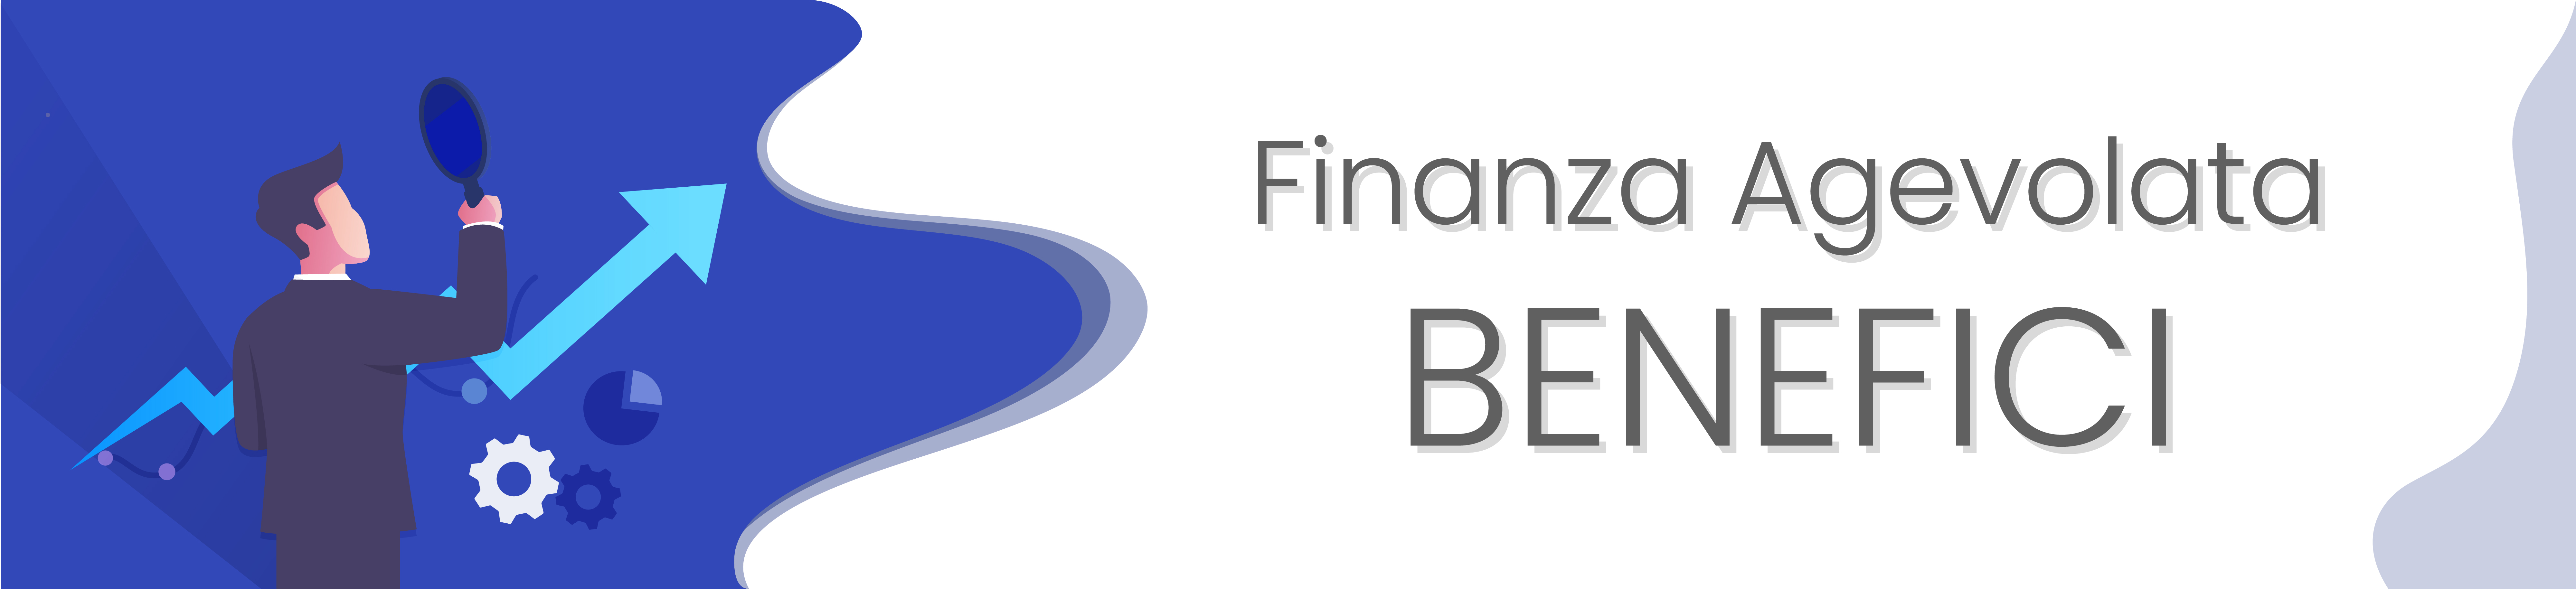 Finanza Agevolata Benefici - Credit Team - Agevolazioni Fiscali